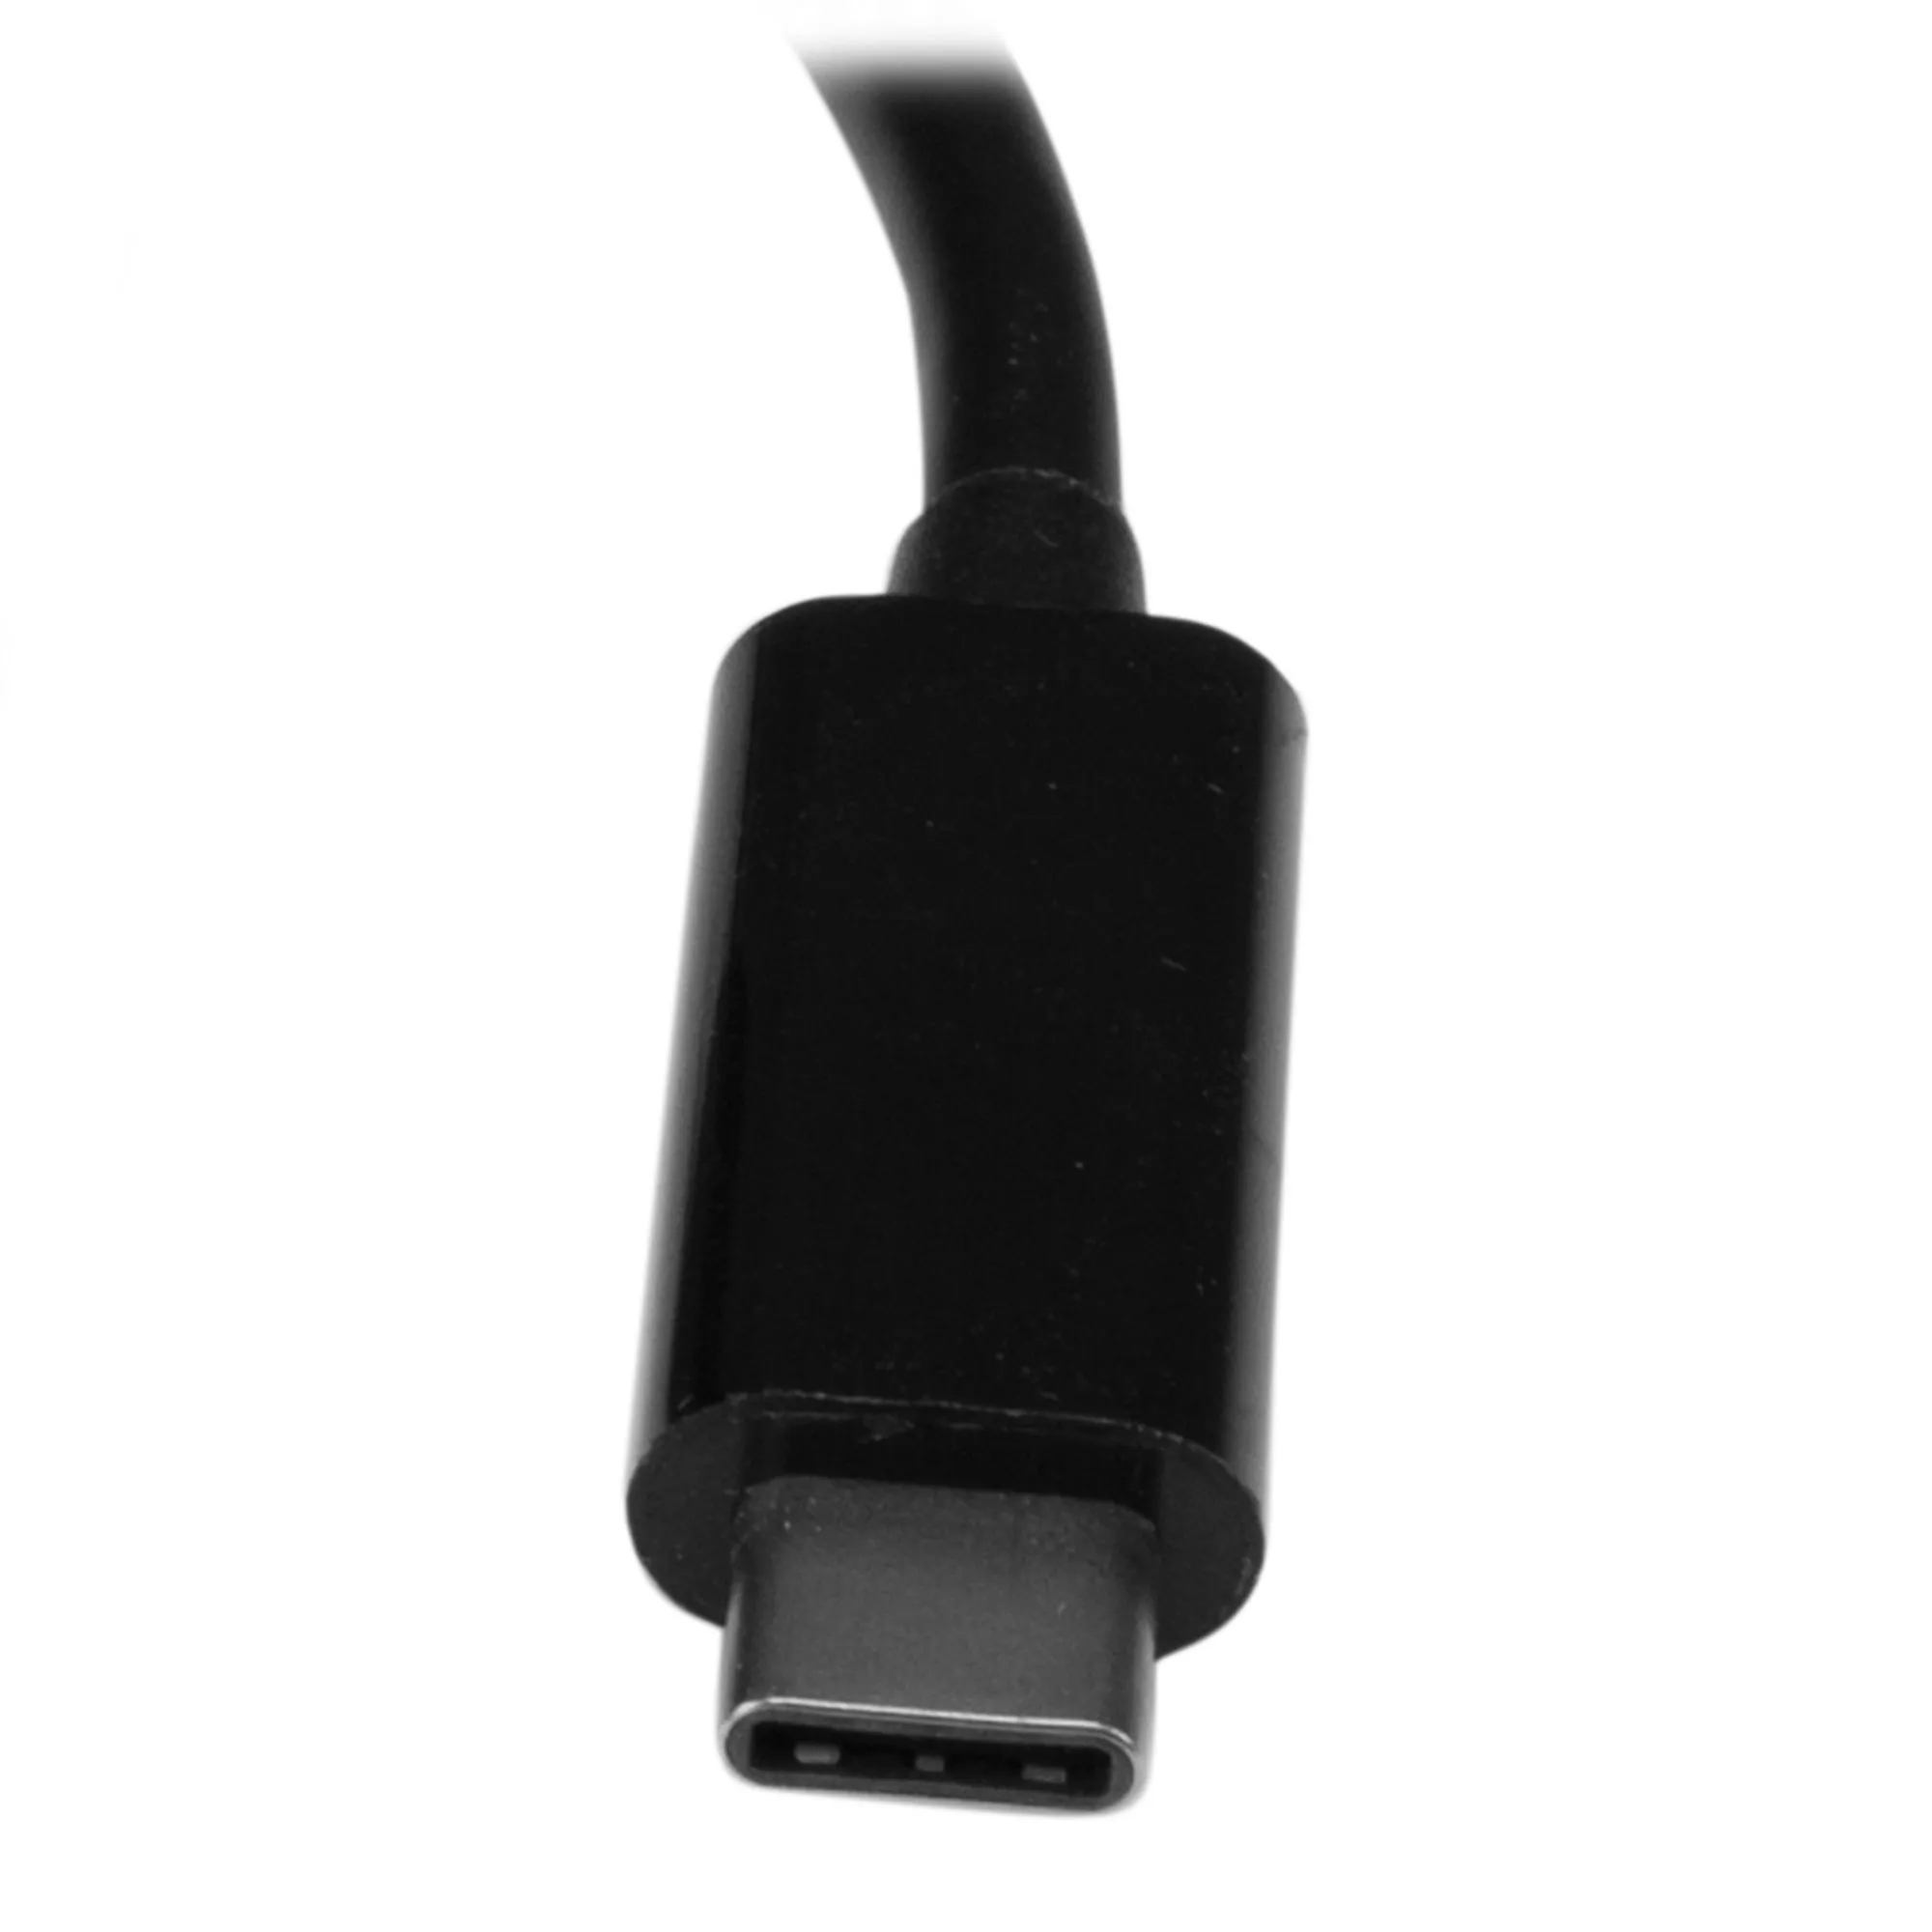 Achat StarTech.com Hub USB 3.0 3 Ports avec Gigabit sur hello RSE - visuel 9